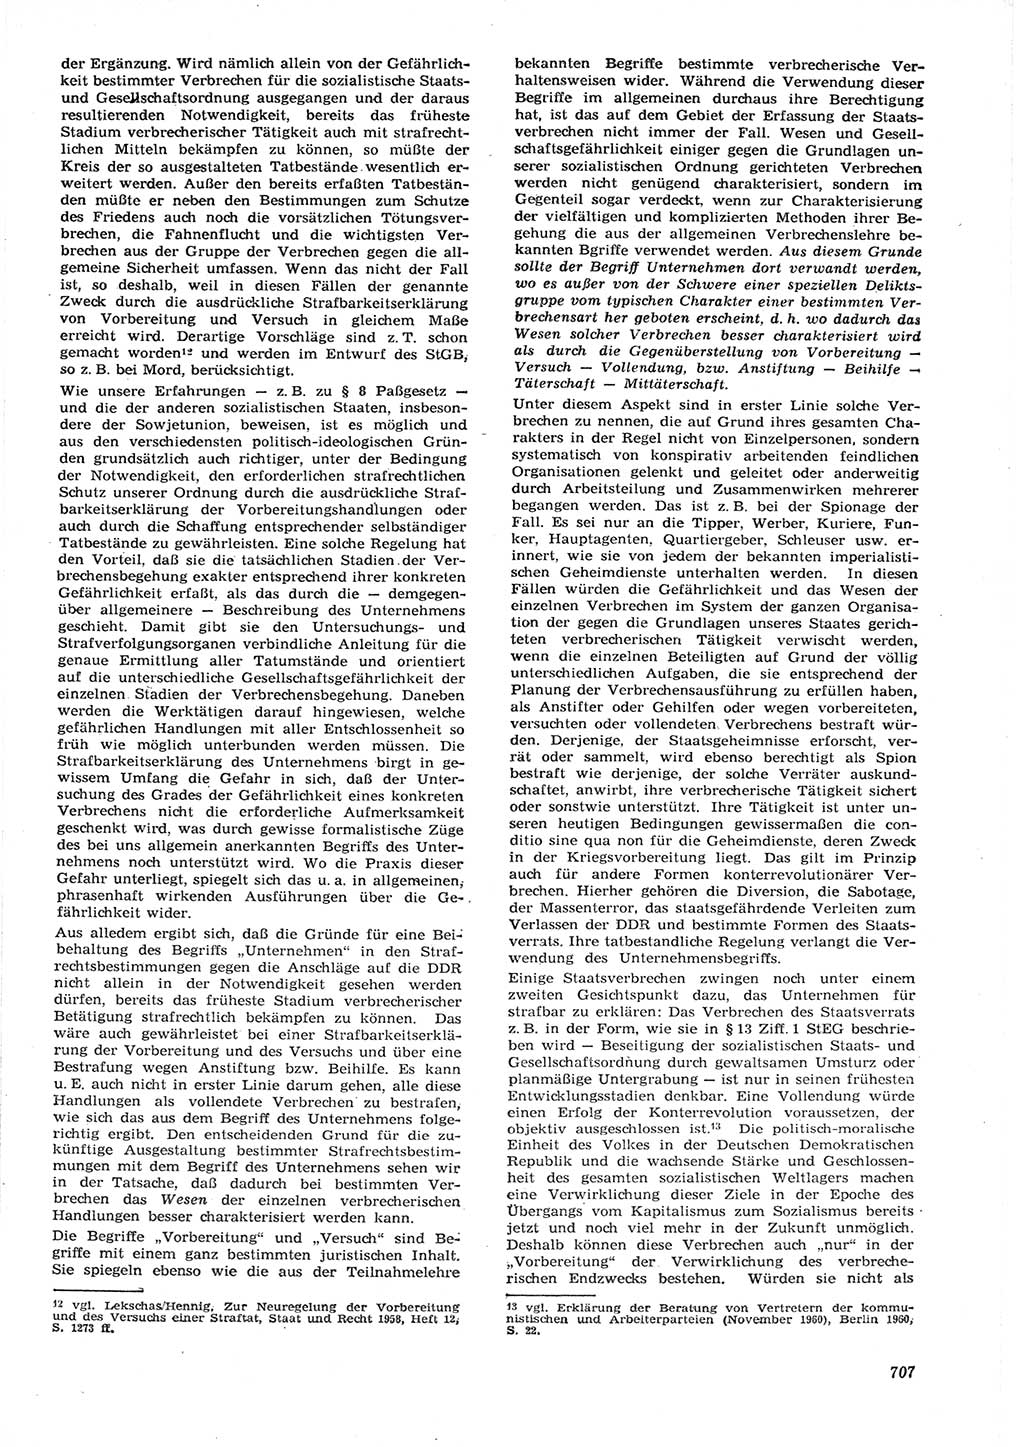 Neue Justiz (NJ), Zeitschrift für Recht und Rechtswissenschaft [Deutsche Demokratische Republik (DDR)], 15. Jahrgang 1961, Seite 707 (NJ DDR 1961, S. 707)